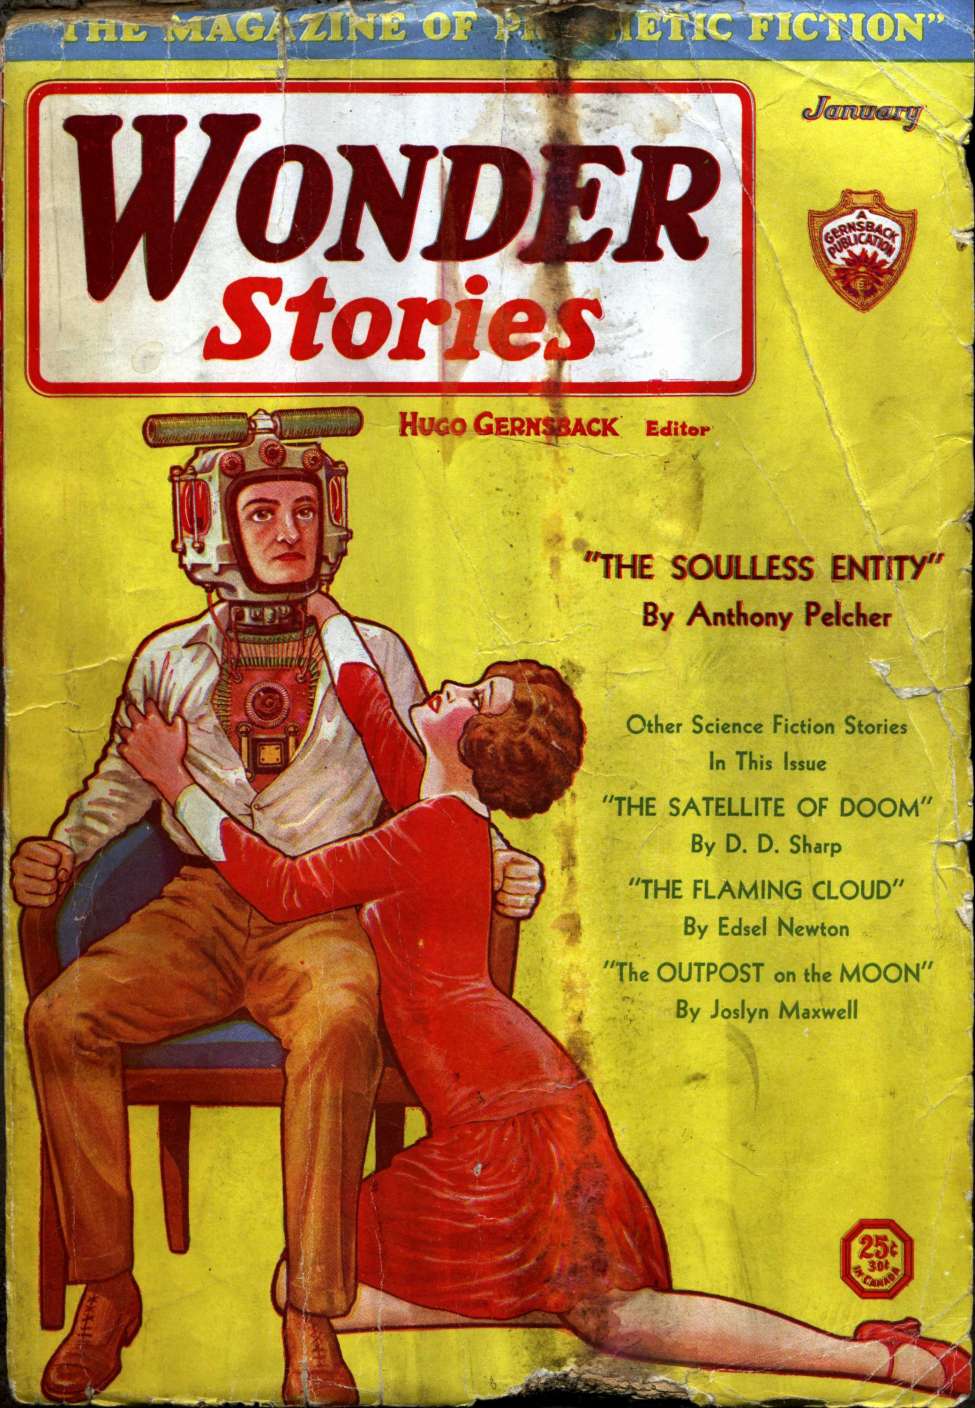 Comic Book Cover For Wonder Stories v2 8 - The Satellite of Doom - D. D. Sharp